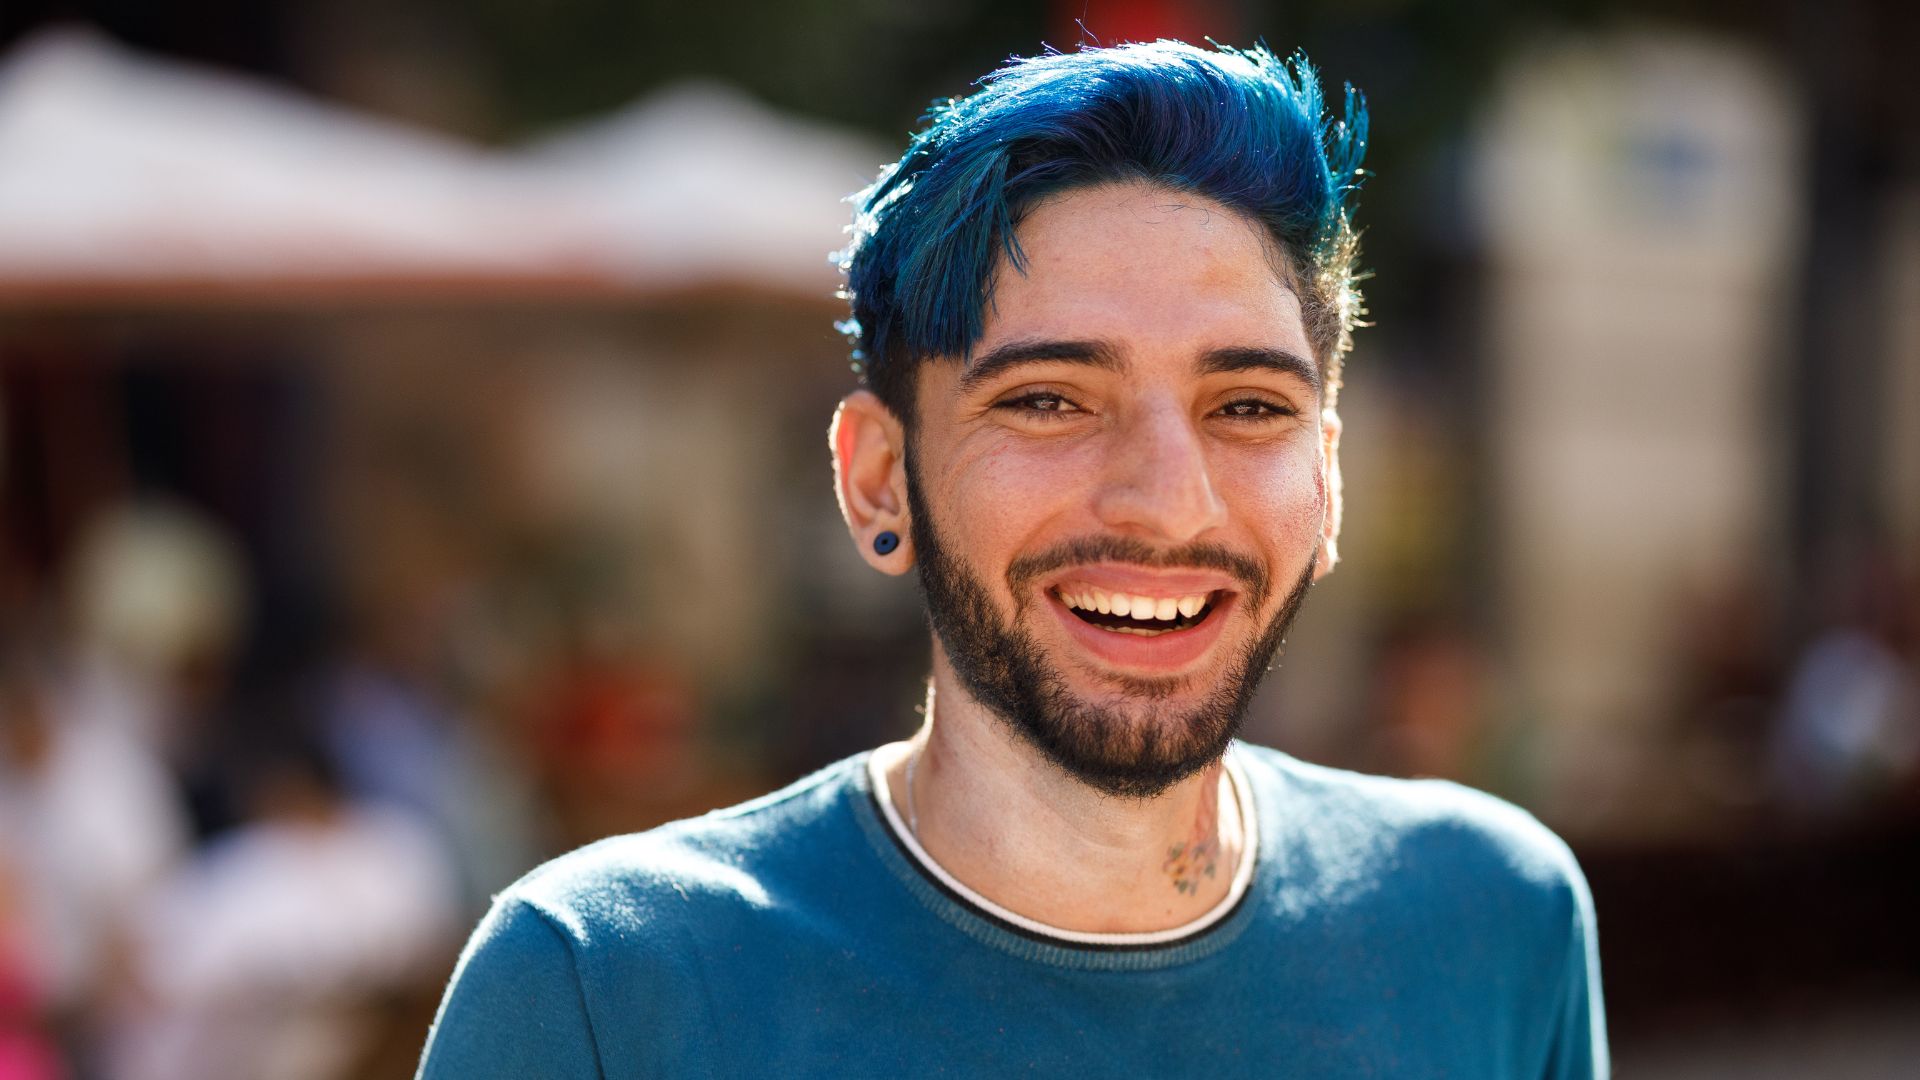 Homme souriant aux cheveux bleus.